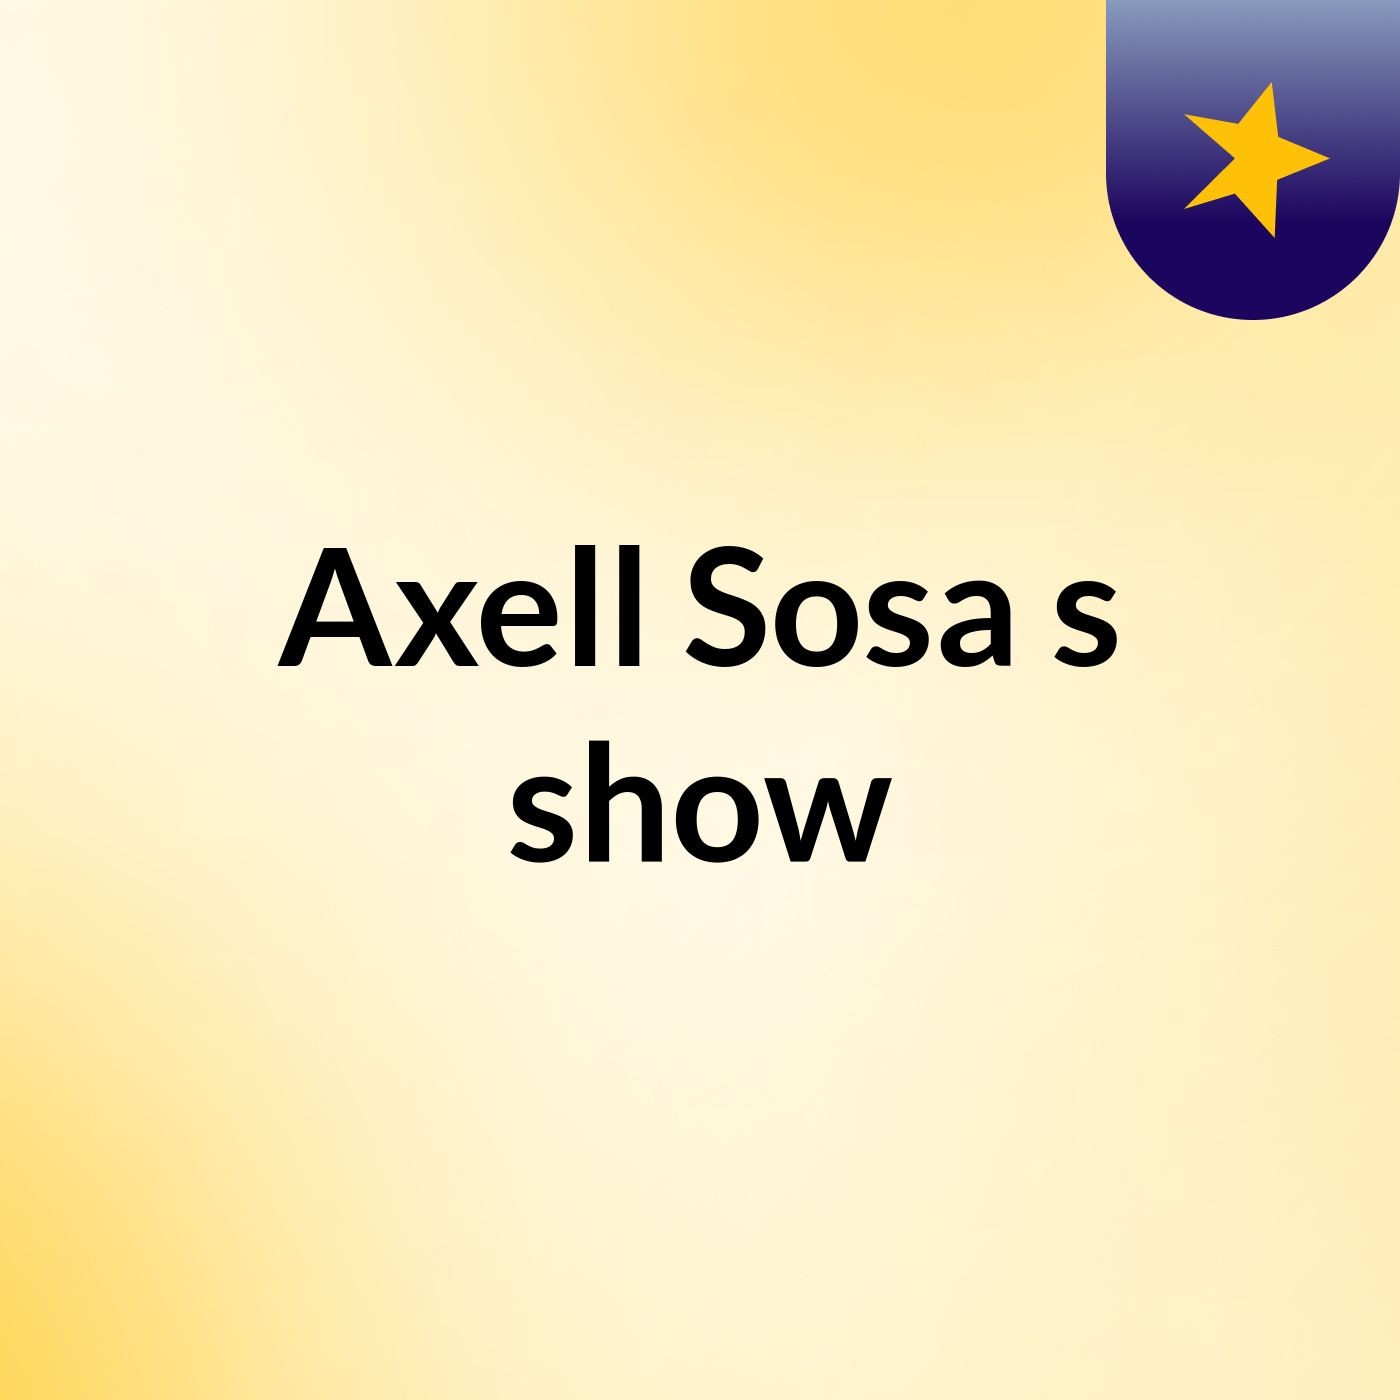 Axell Sosa's show